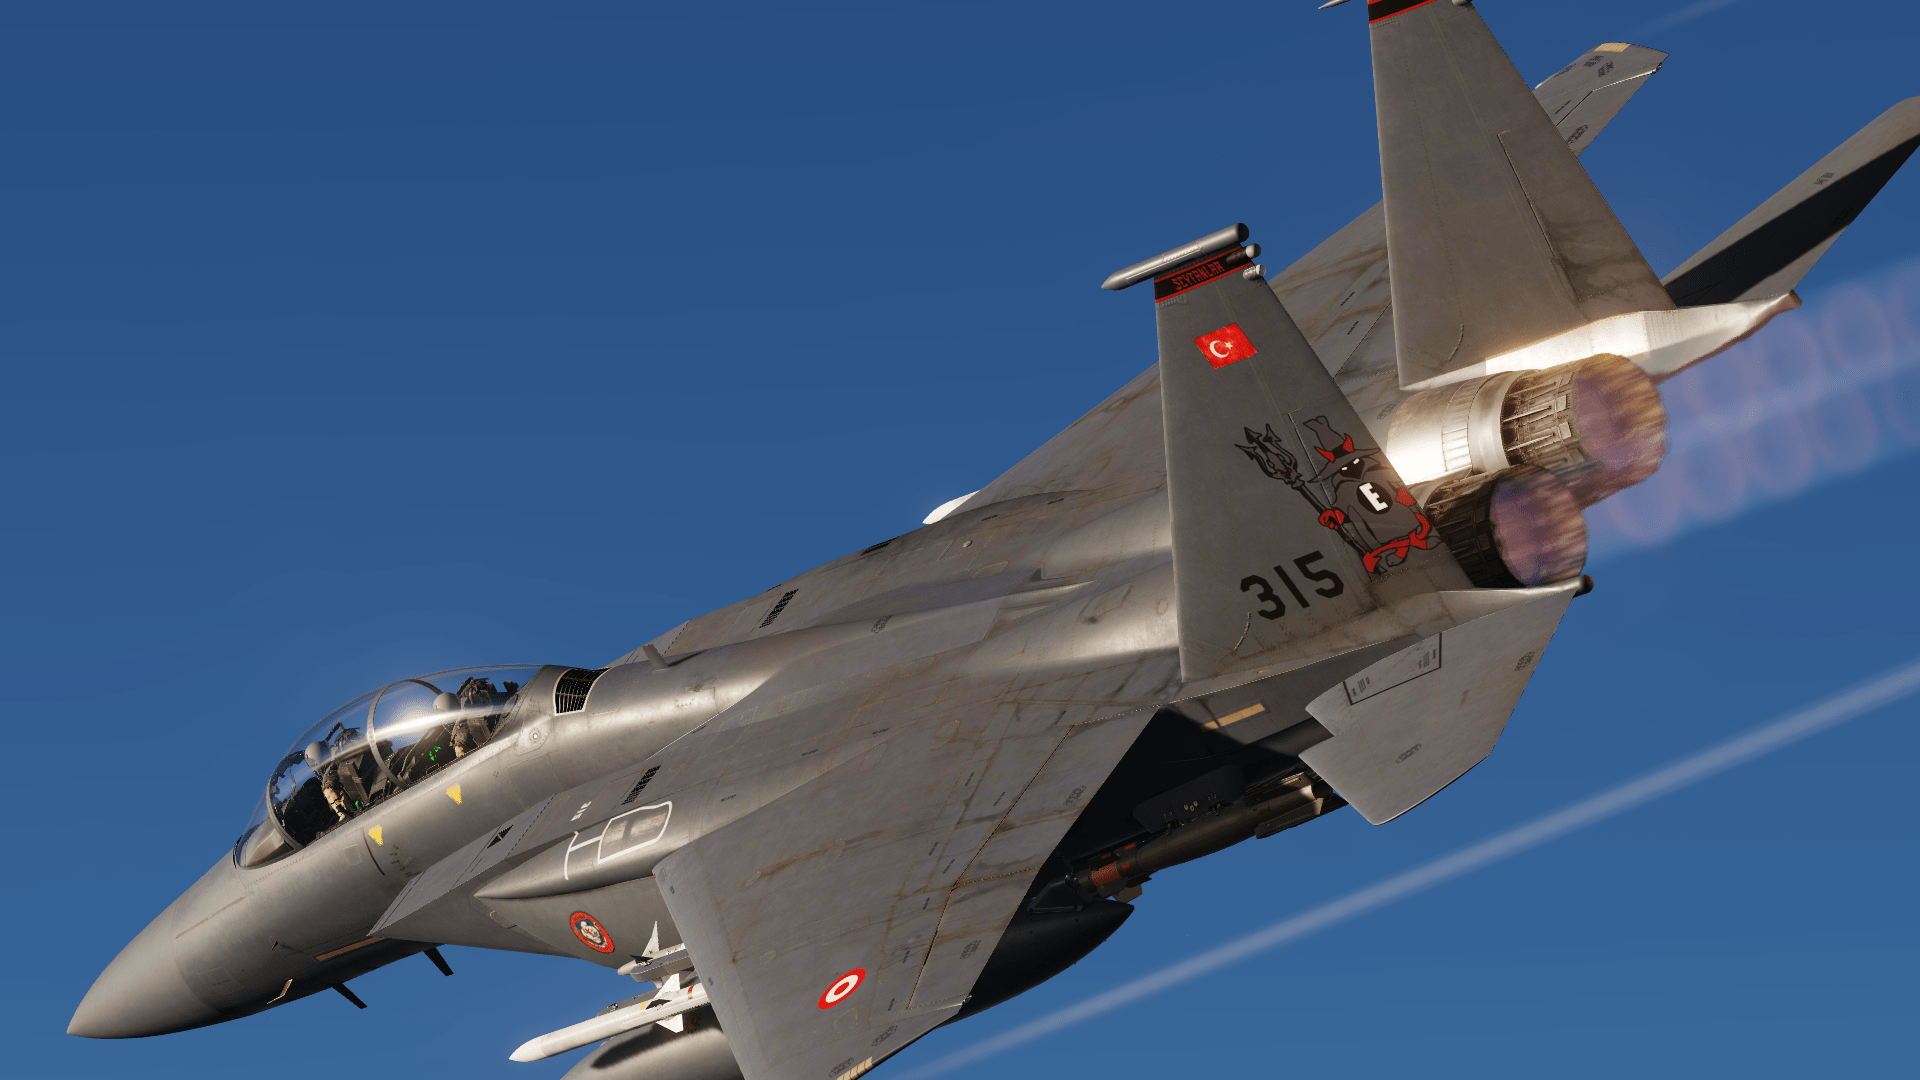 F-15E TurAF 112th Şeytanlar (Devils)